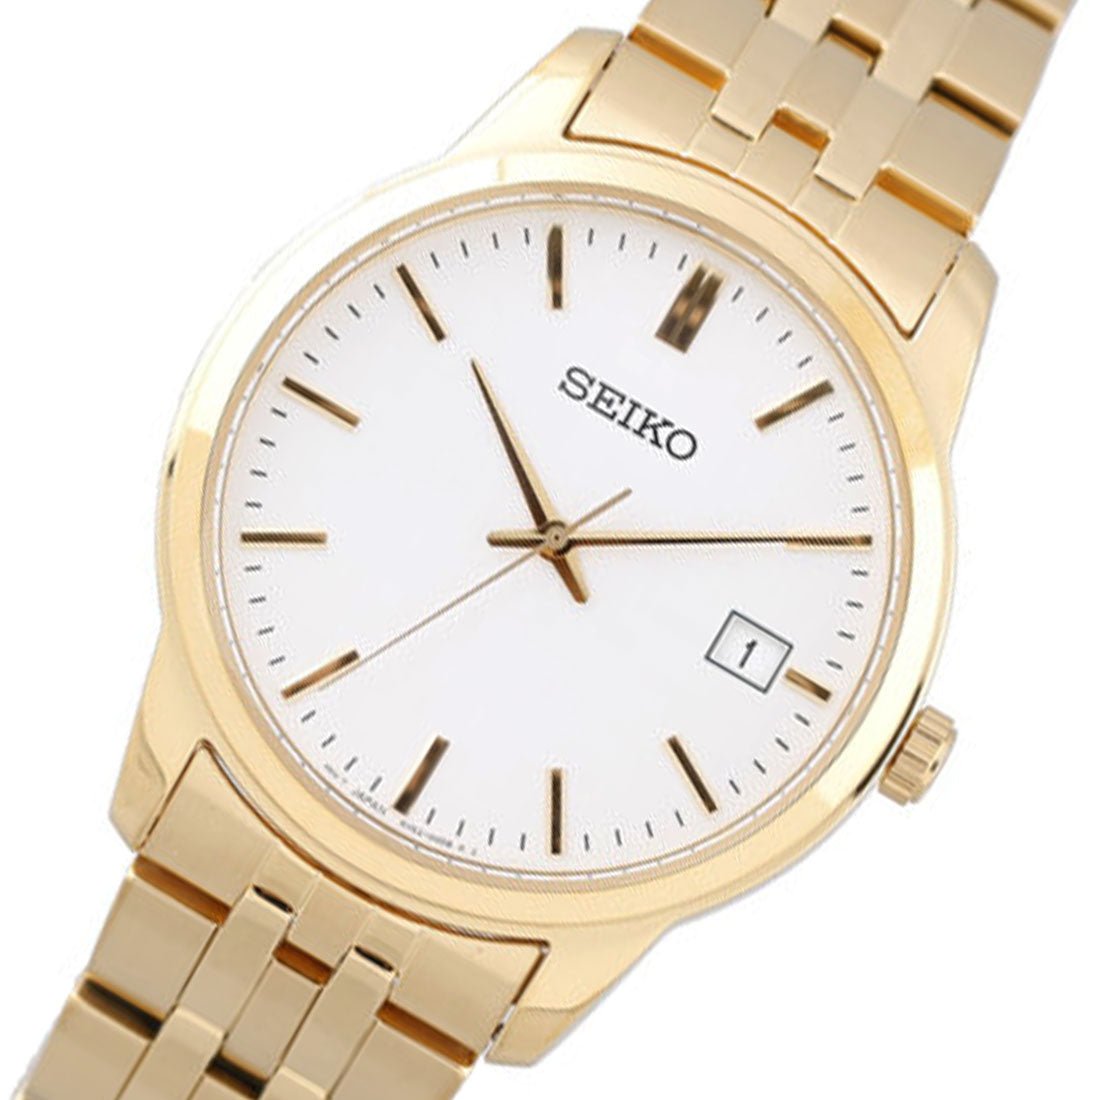 Seiko SUR404P1 SUR404 Gold Stainless Steel White Dial Fashion Watch -Seiko